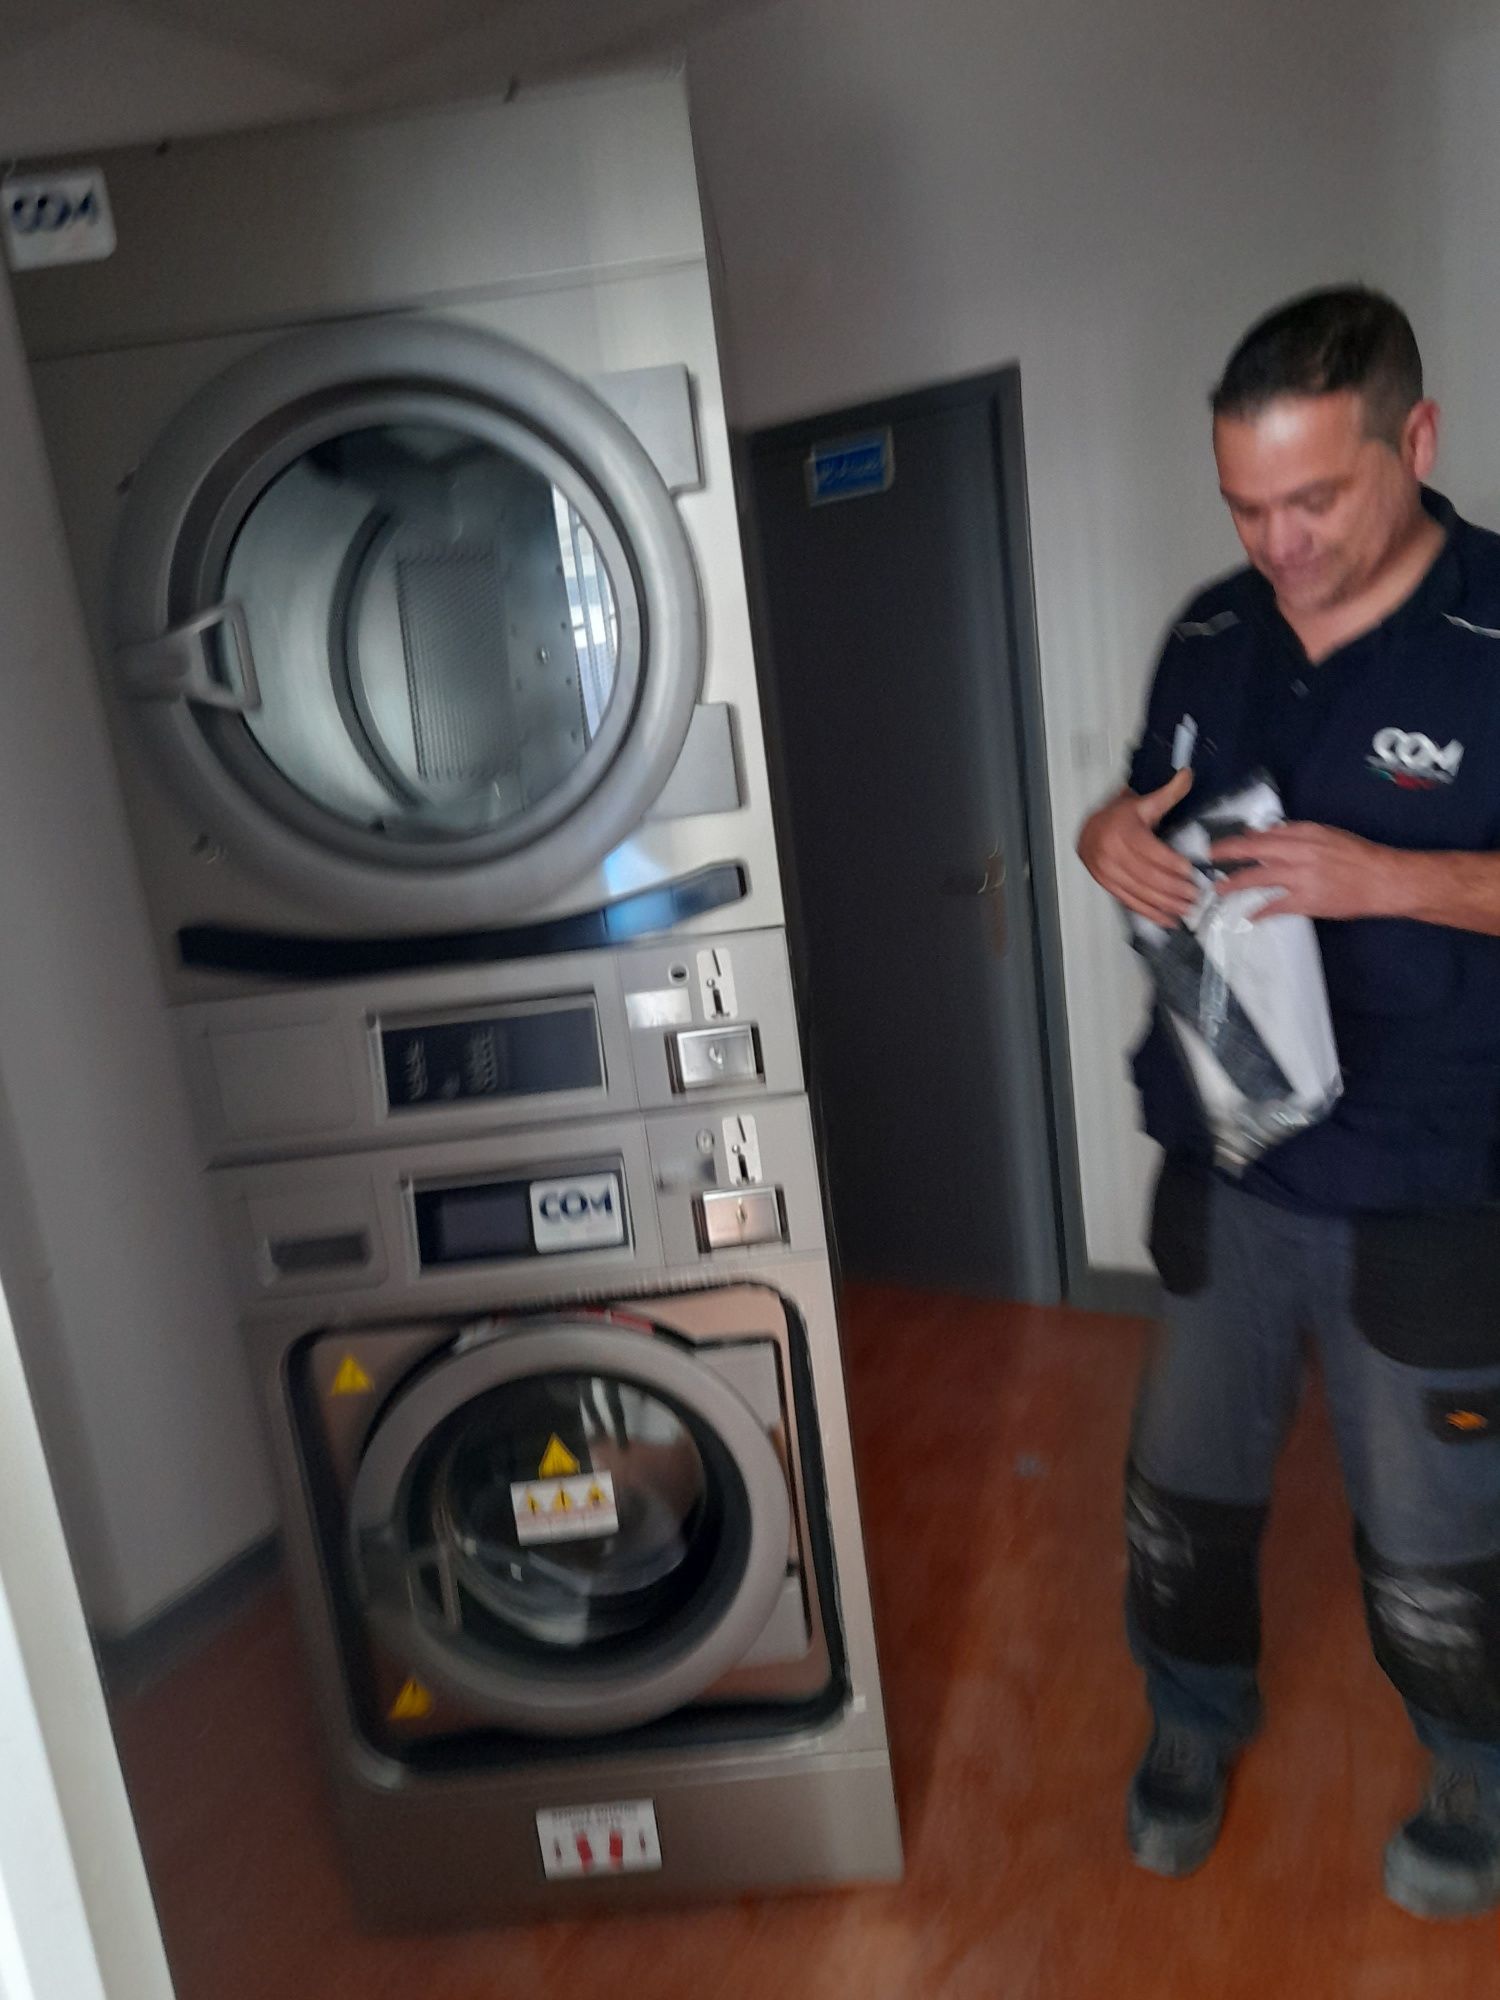 Hoteis,  Residencias Senior Maq lavar , Secadores